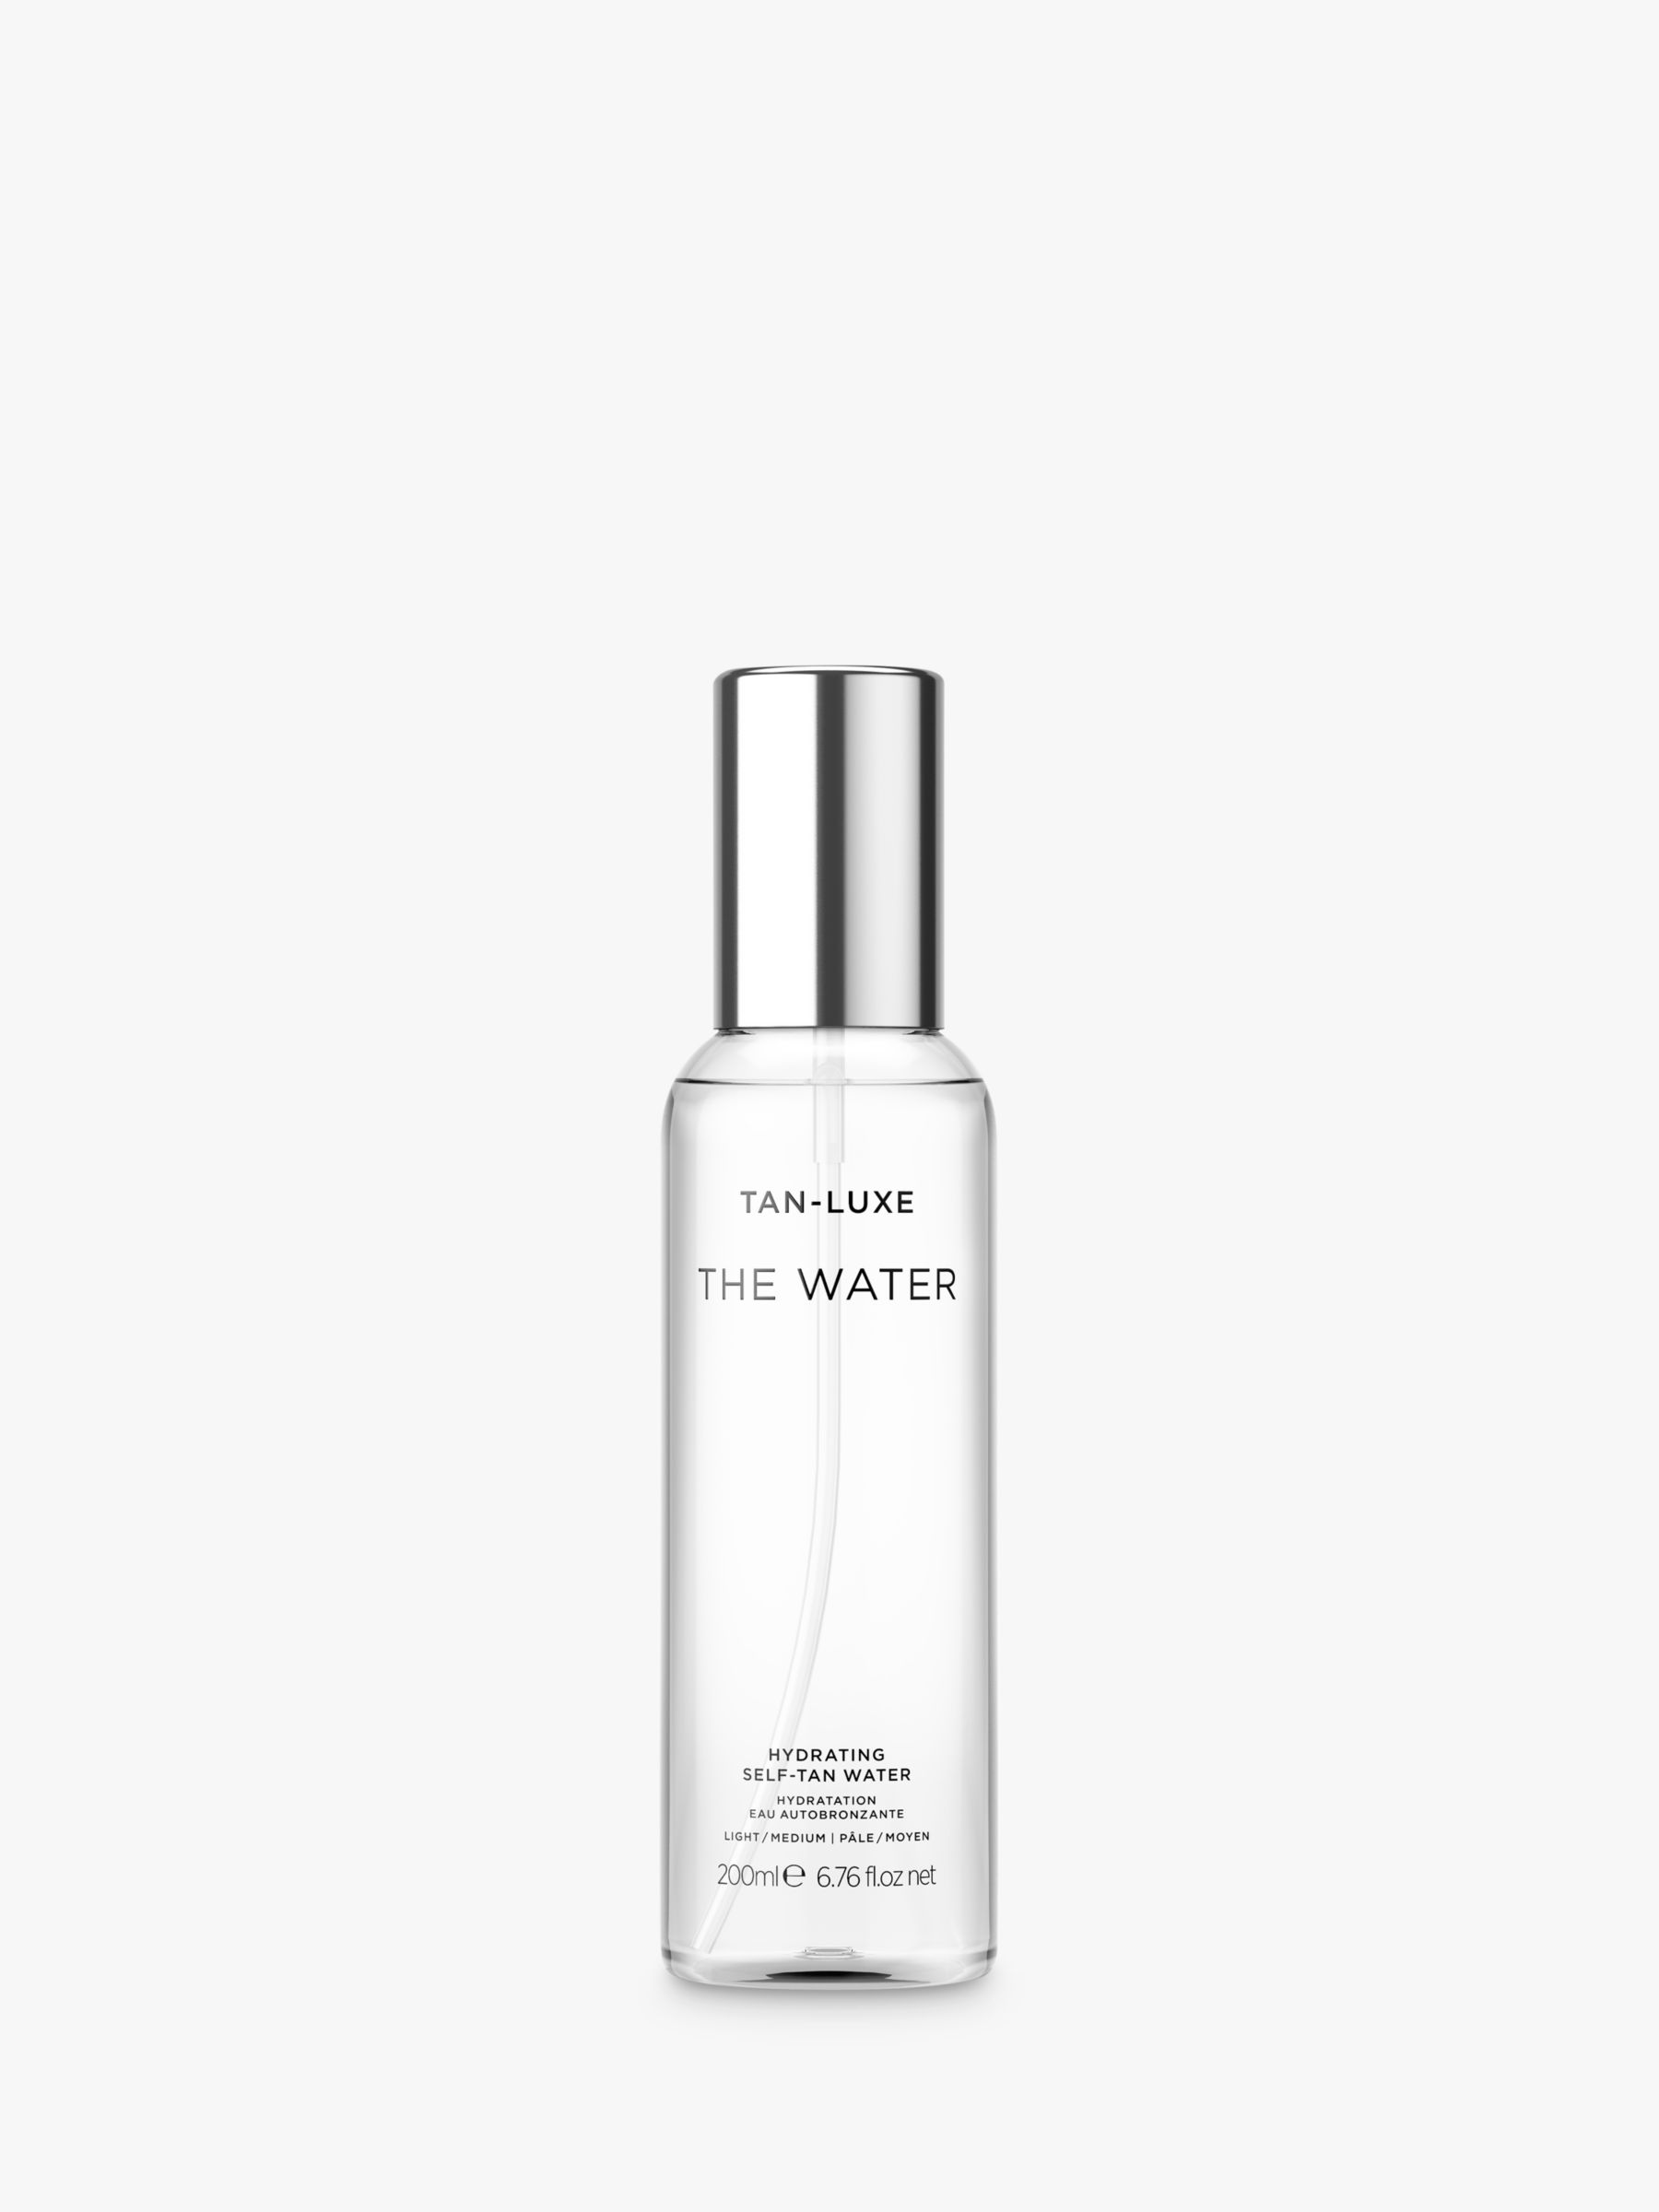 Tan-Luxe The Water Hydrating Self-Tan Water, Light/Medium 1